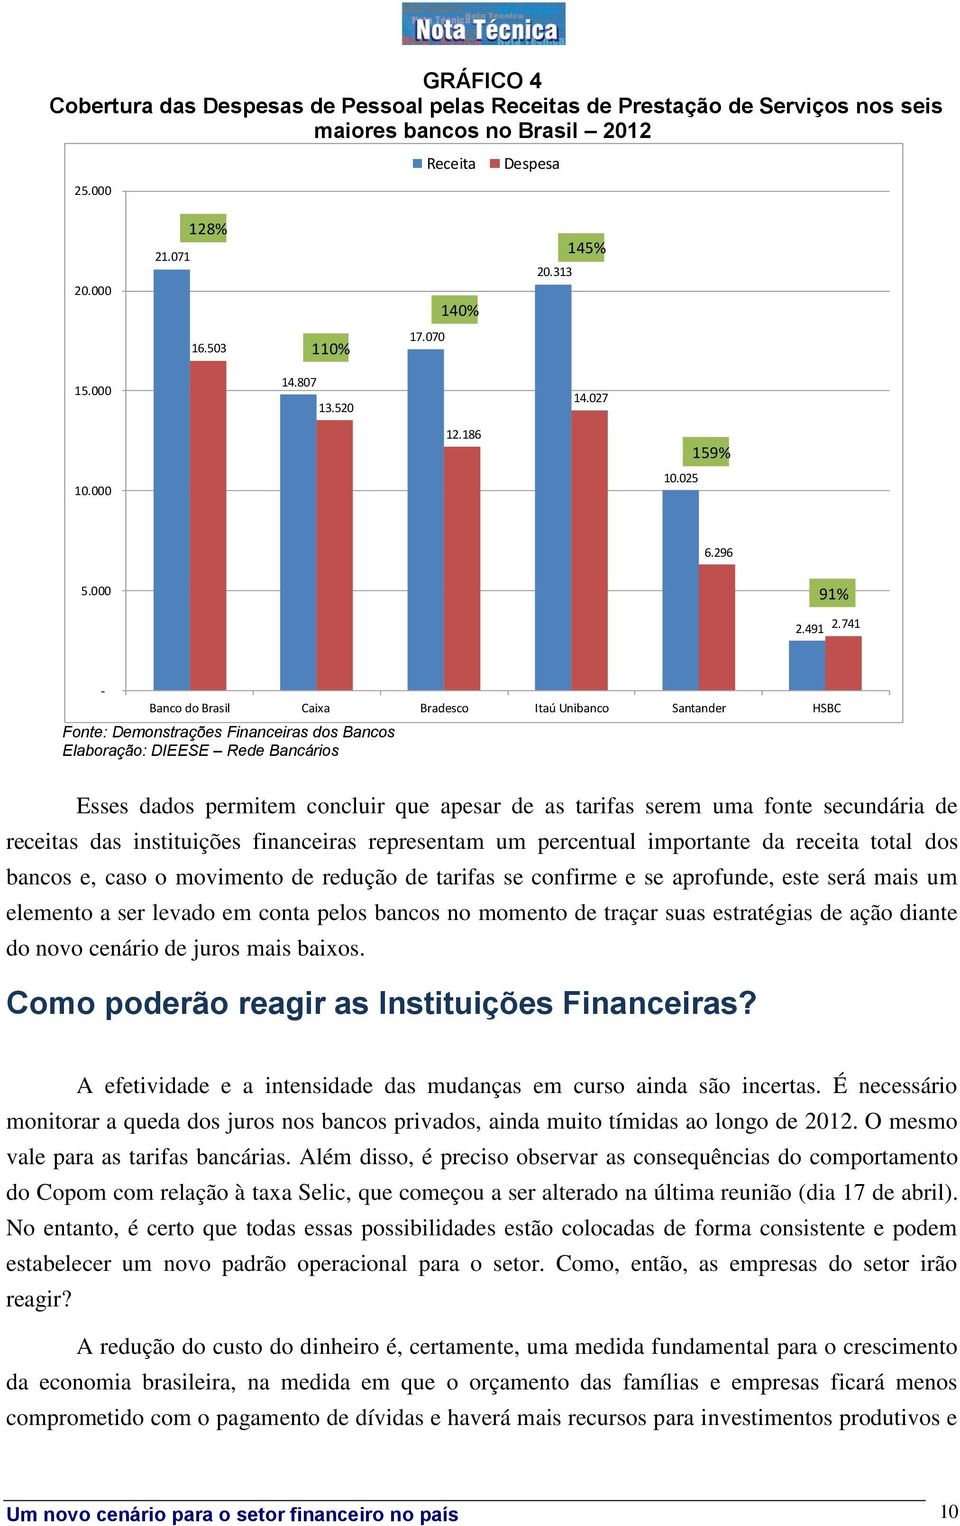 741 - Banco do Brasil Caixa Bradesco Itaú Unibanco Santander HSBC Fonte: Demonstrações Financeiras dos Bancos Esses dados permitem concluir que apesar de as tarifas serem uma fonte secundária de